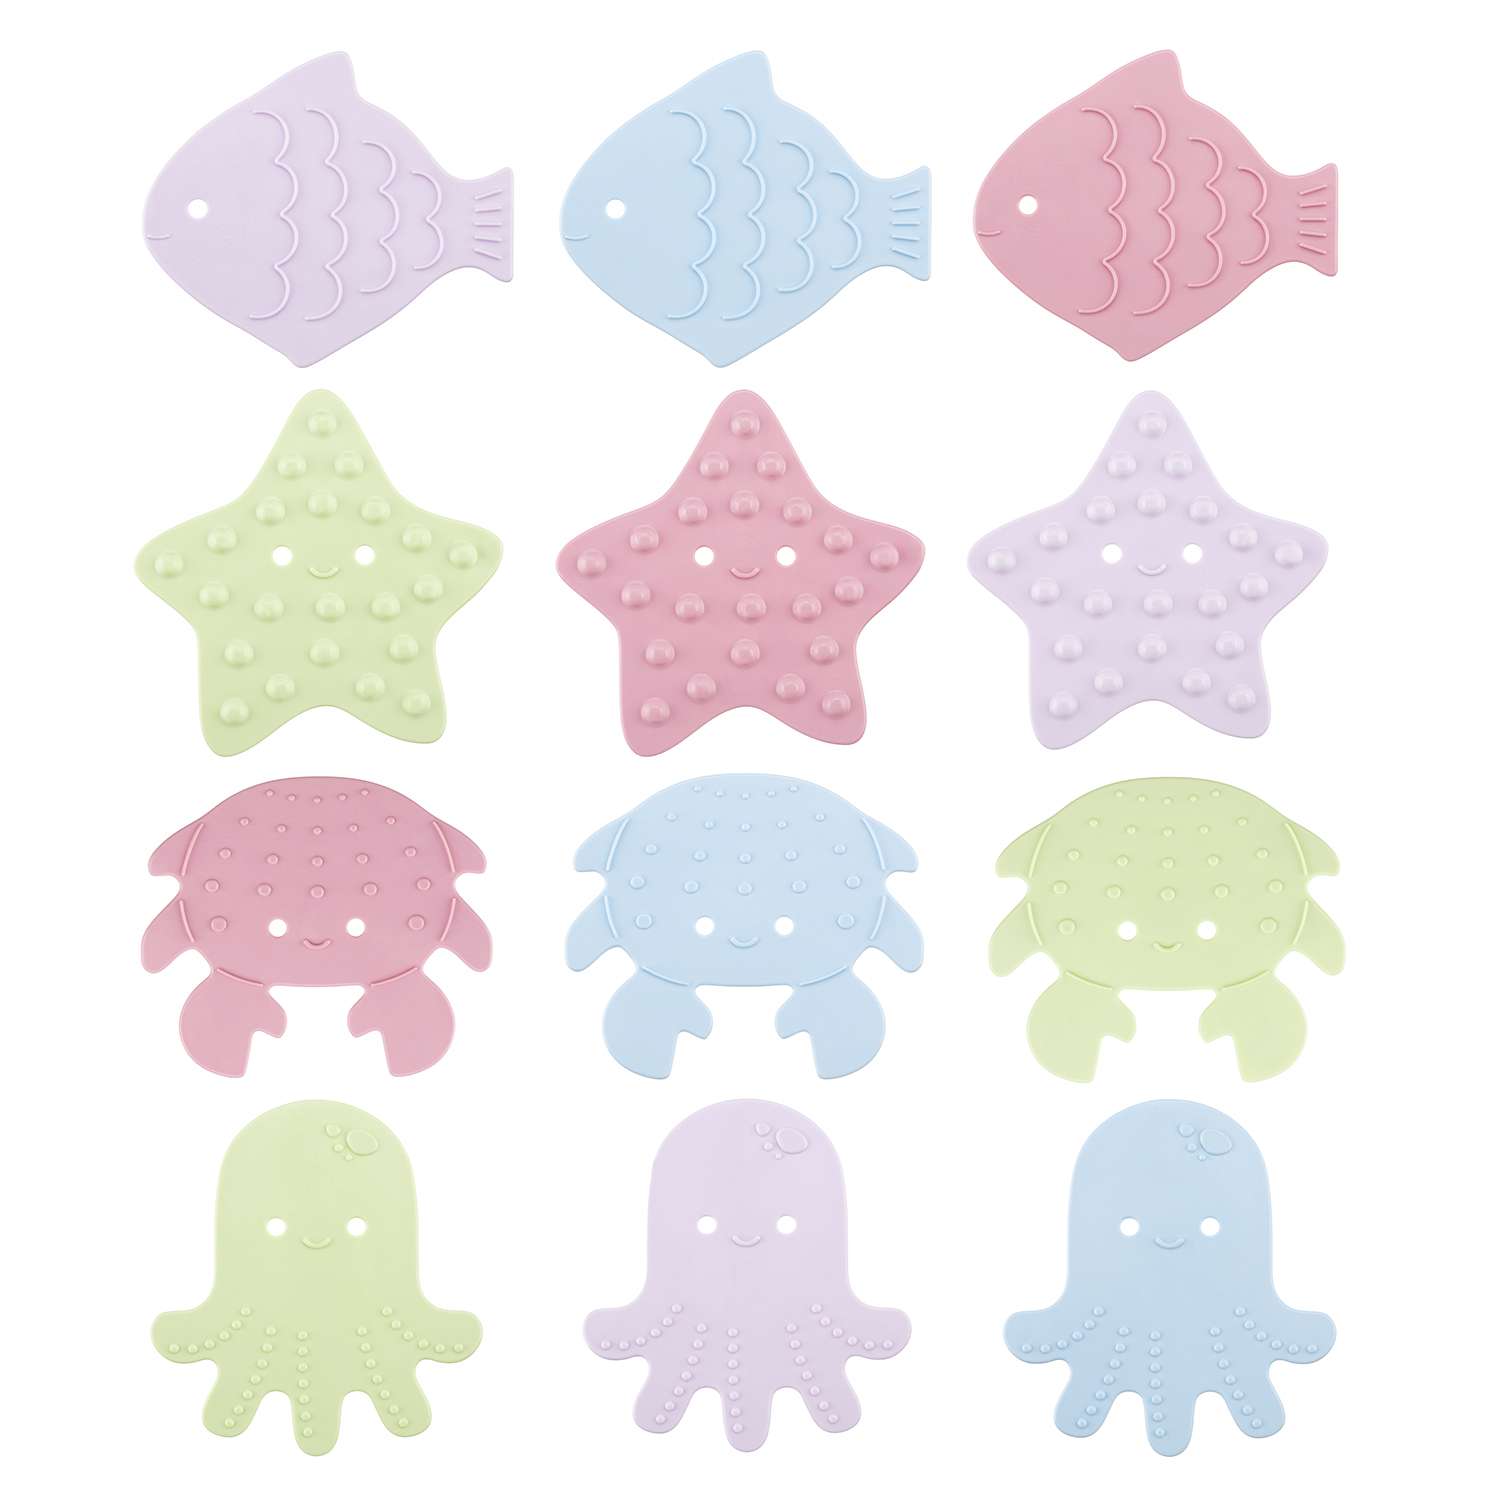 Мини-коврики детские ROXY-KIDS для ванной противоскользящие Sea animals 12 шт цвета в ассортименте - фото 3